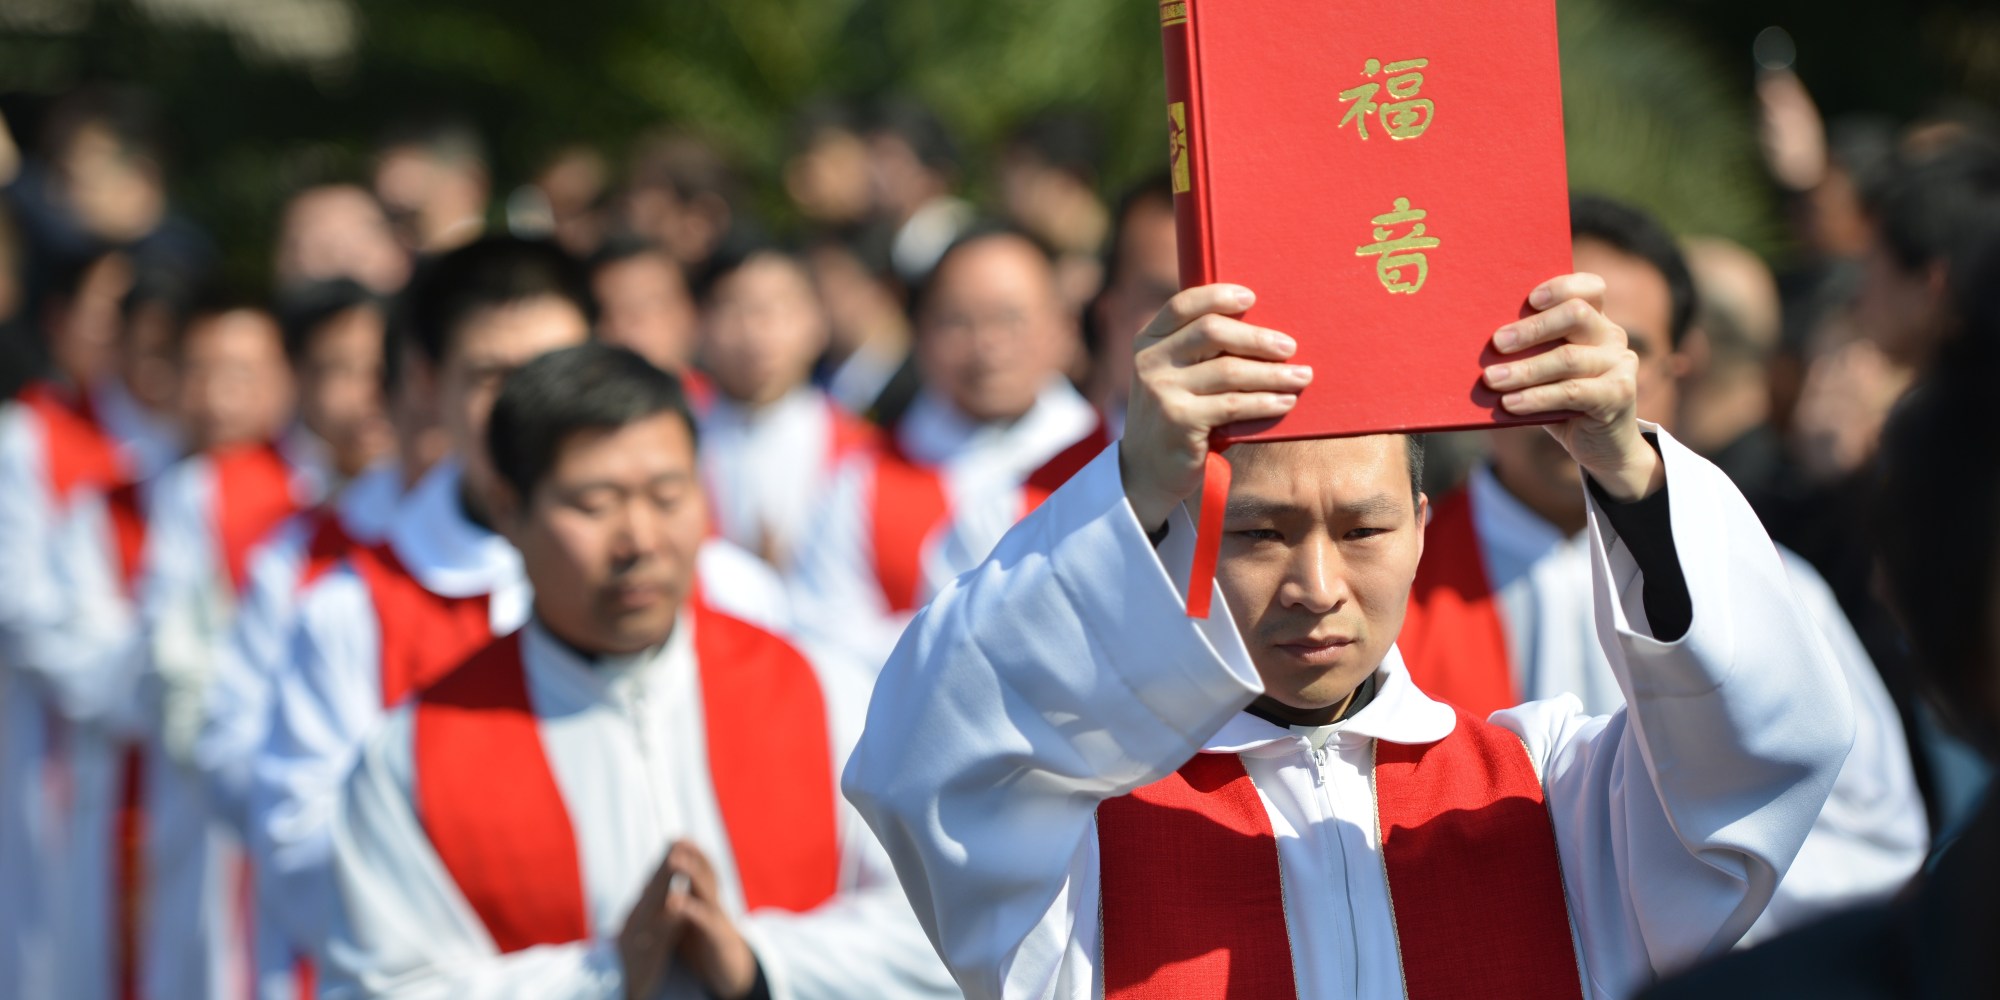 Religion mayoritaria en china